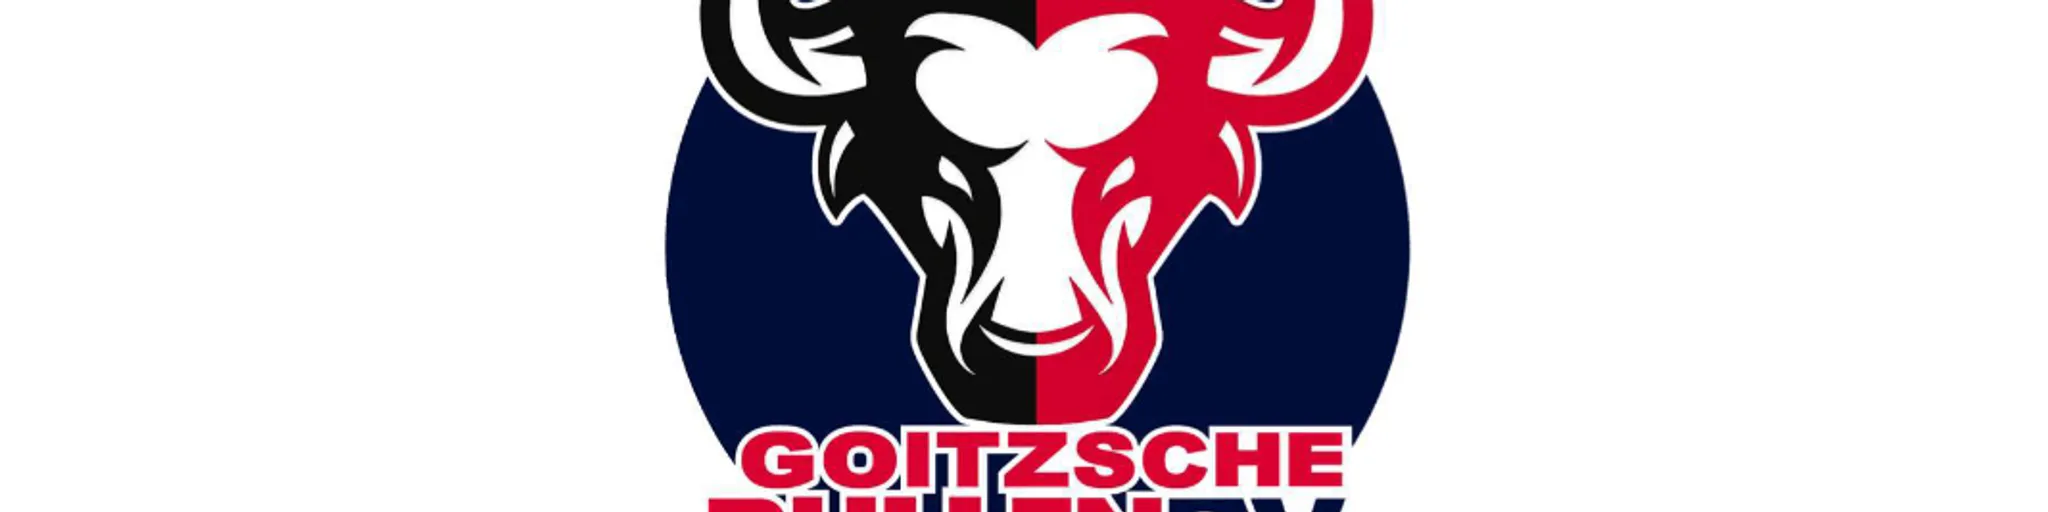 Goitzsche Bullen, OFC seit 11. Januar 2019